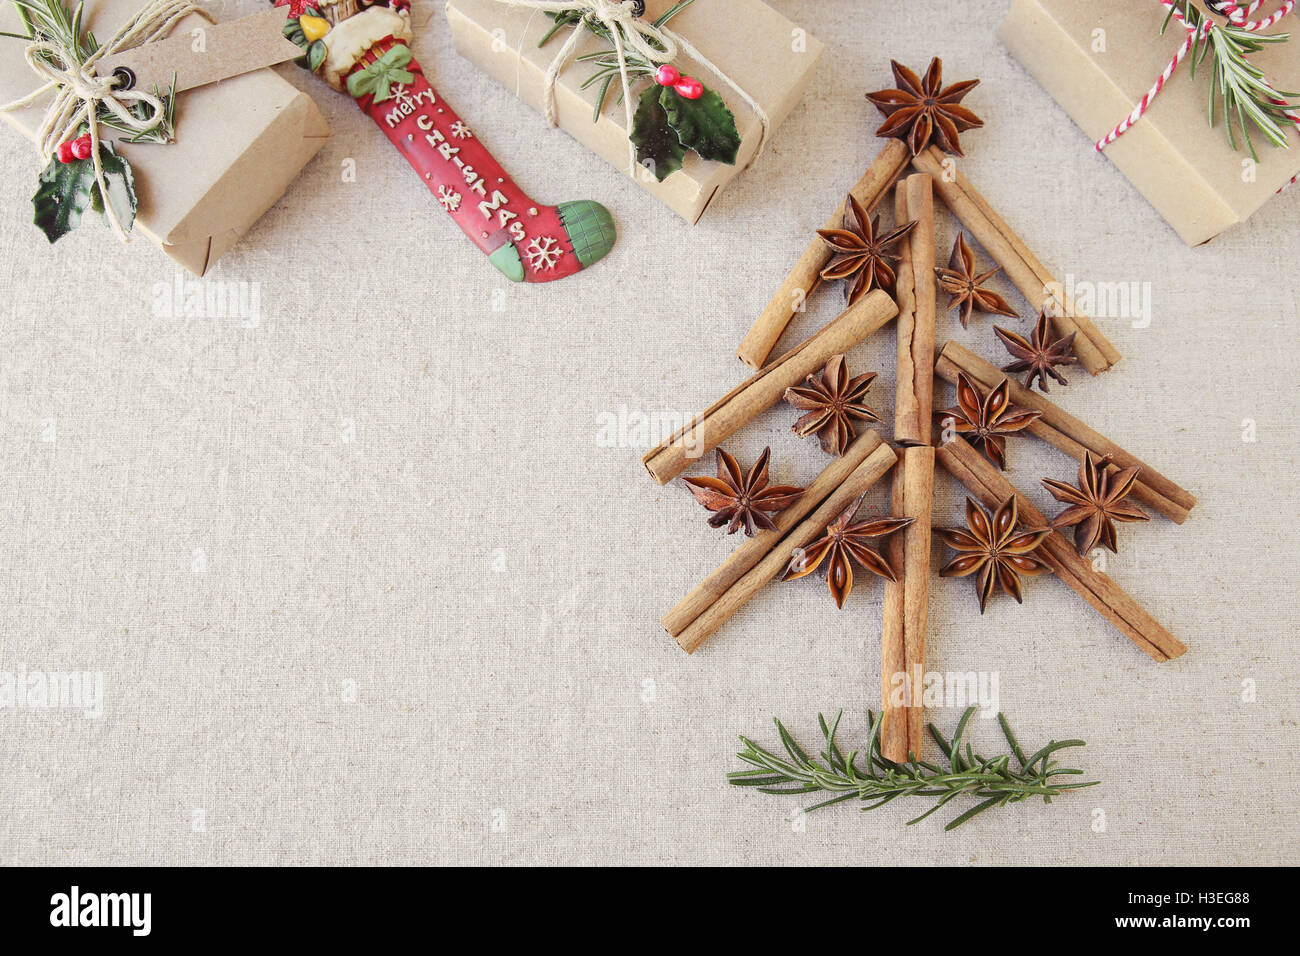 Weihnachtsbaum aus Stern Anis und Zimt mit Eco Geschenkkartons, Textfreiraum Hintergrund toning sticks Stockfoto